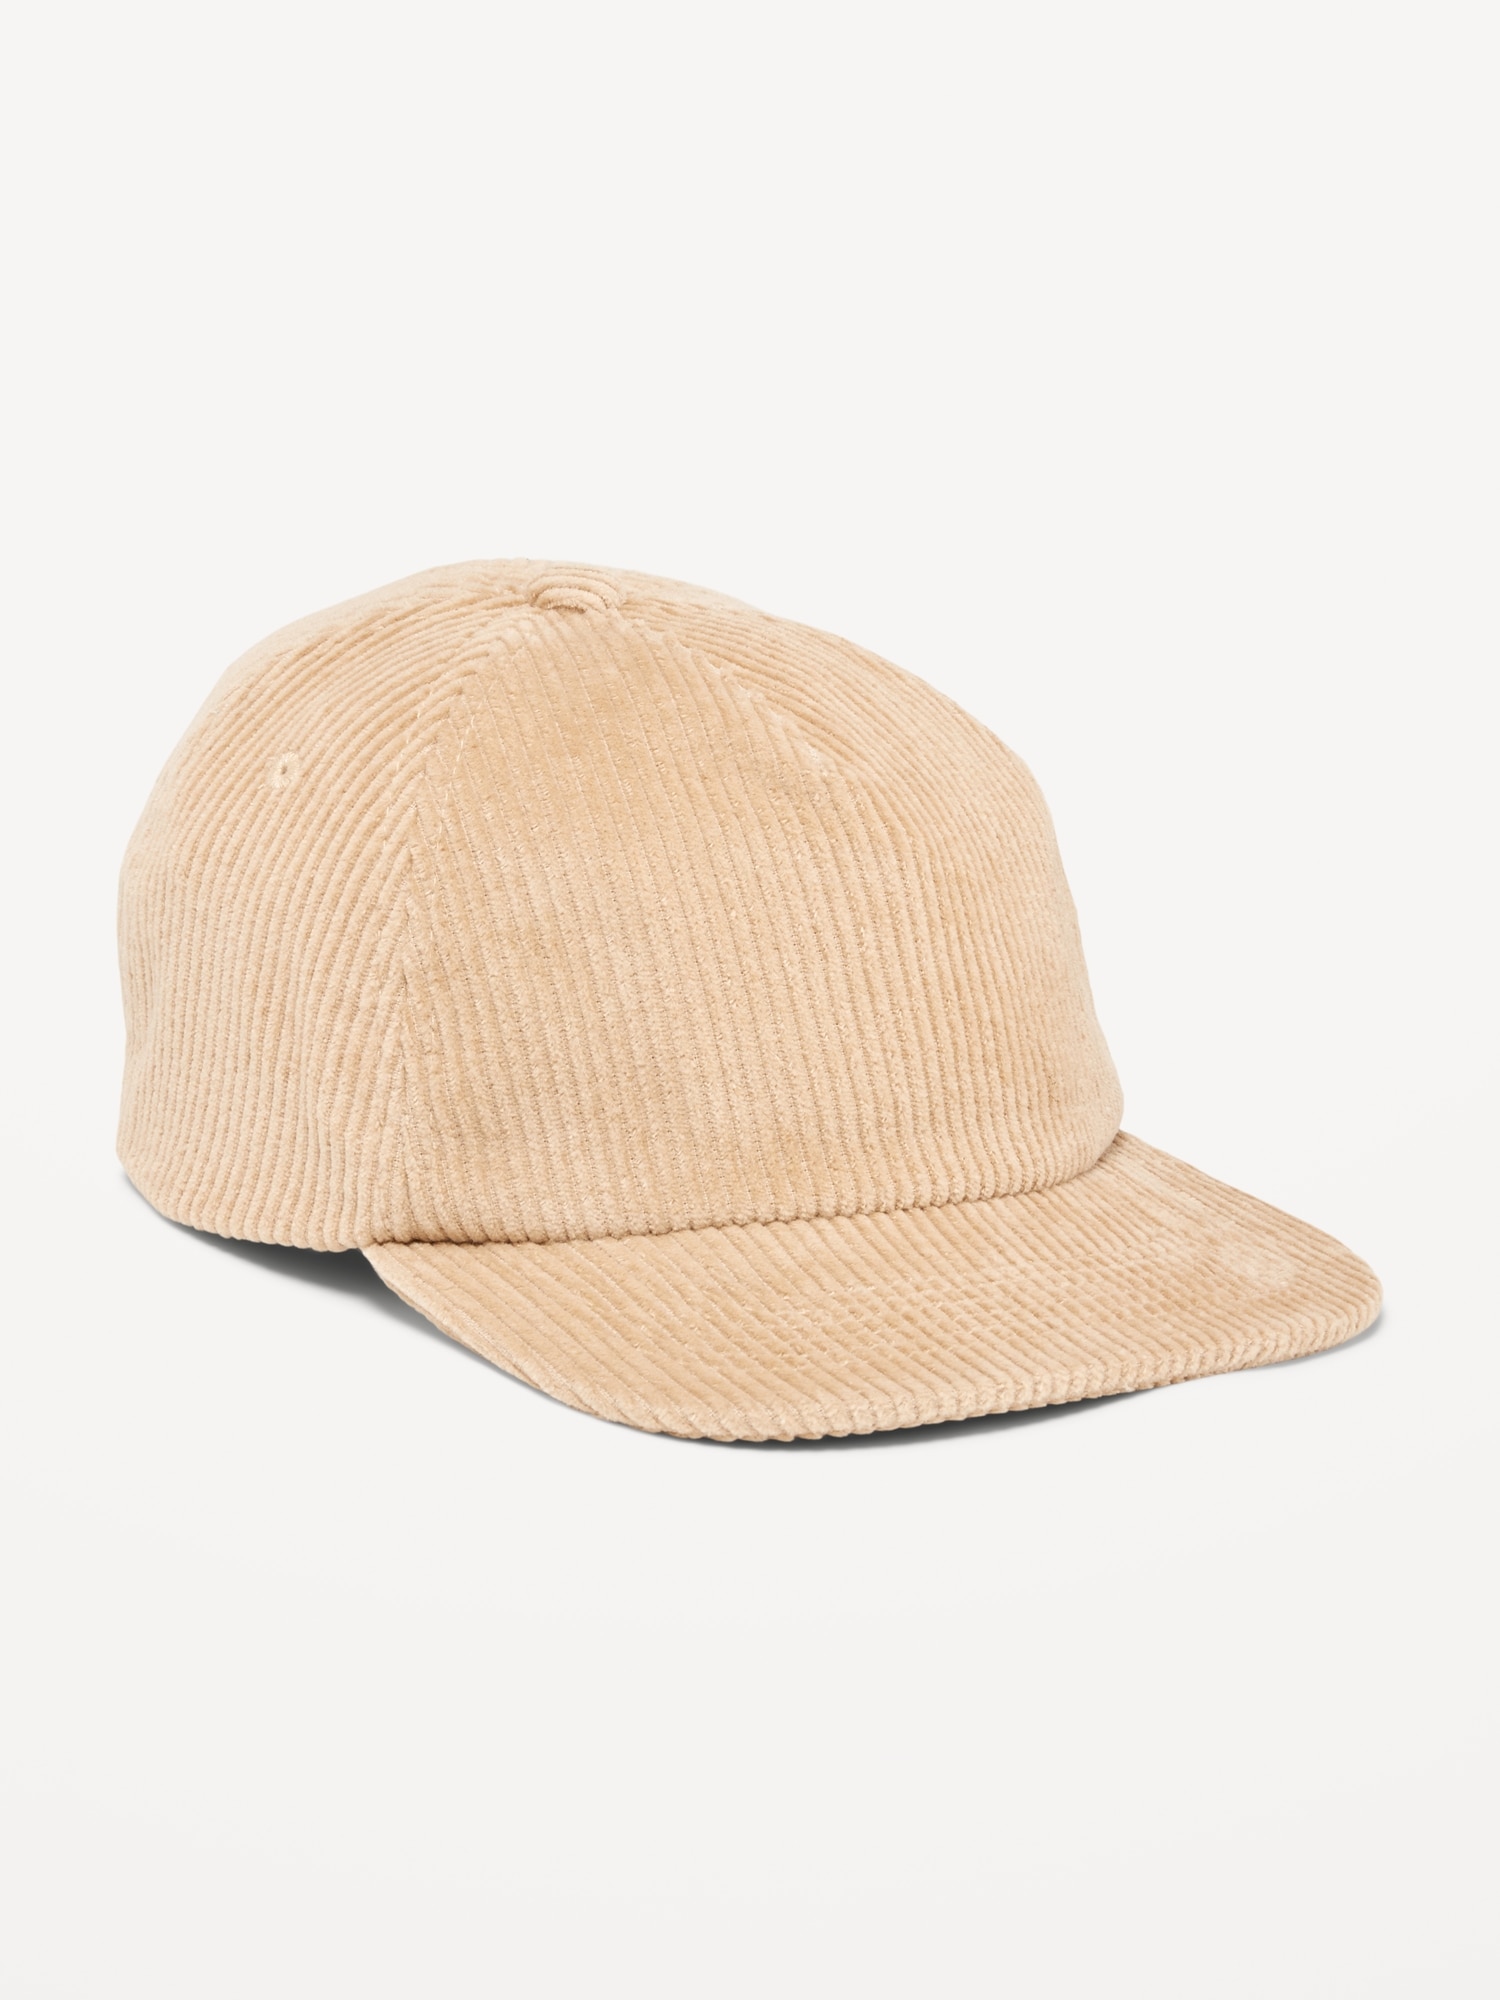 Gender-Neutral Flat-Brim Corduroy Trucker Hat for Kids | Old Navy